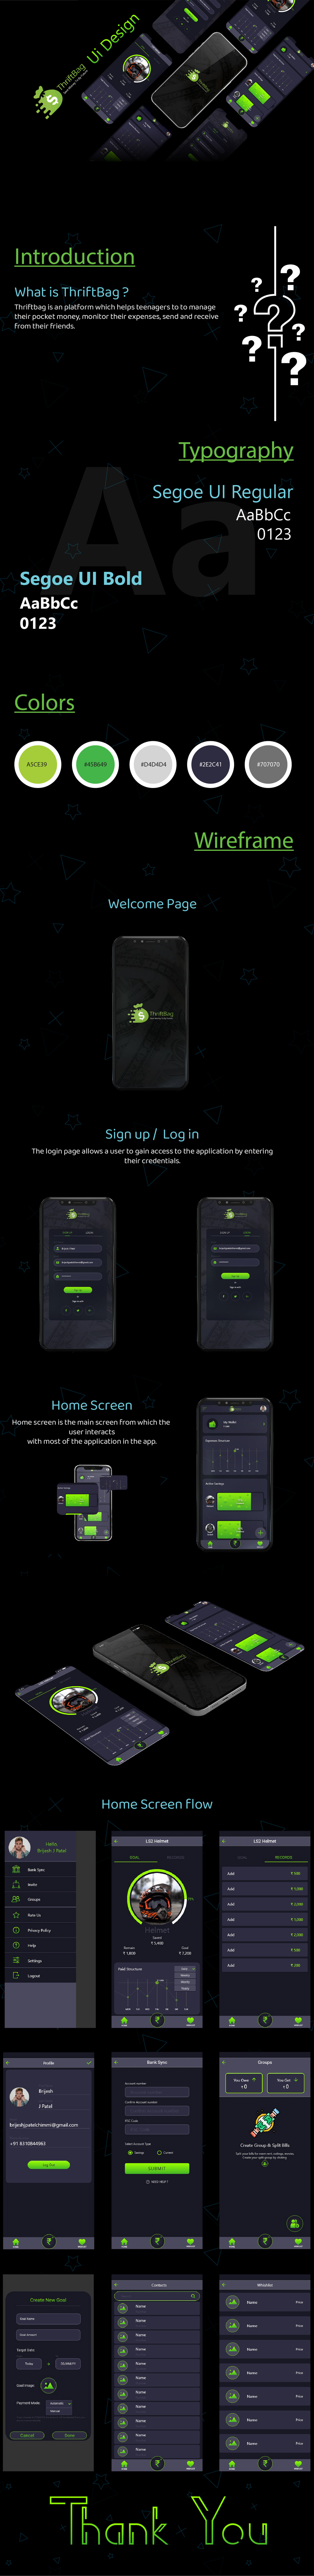 app design app ui branding  ios ui design ui mobile  UI/UX Design user interface